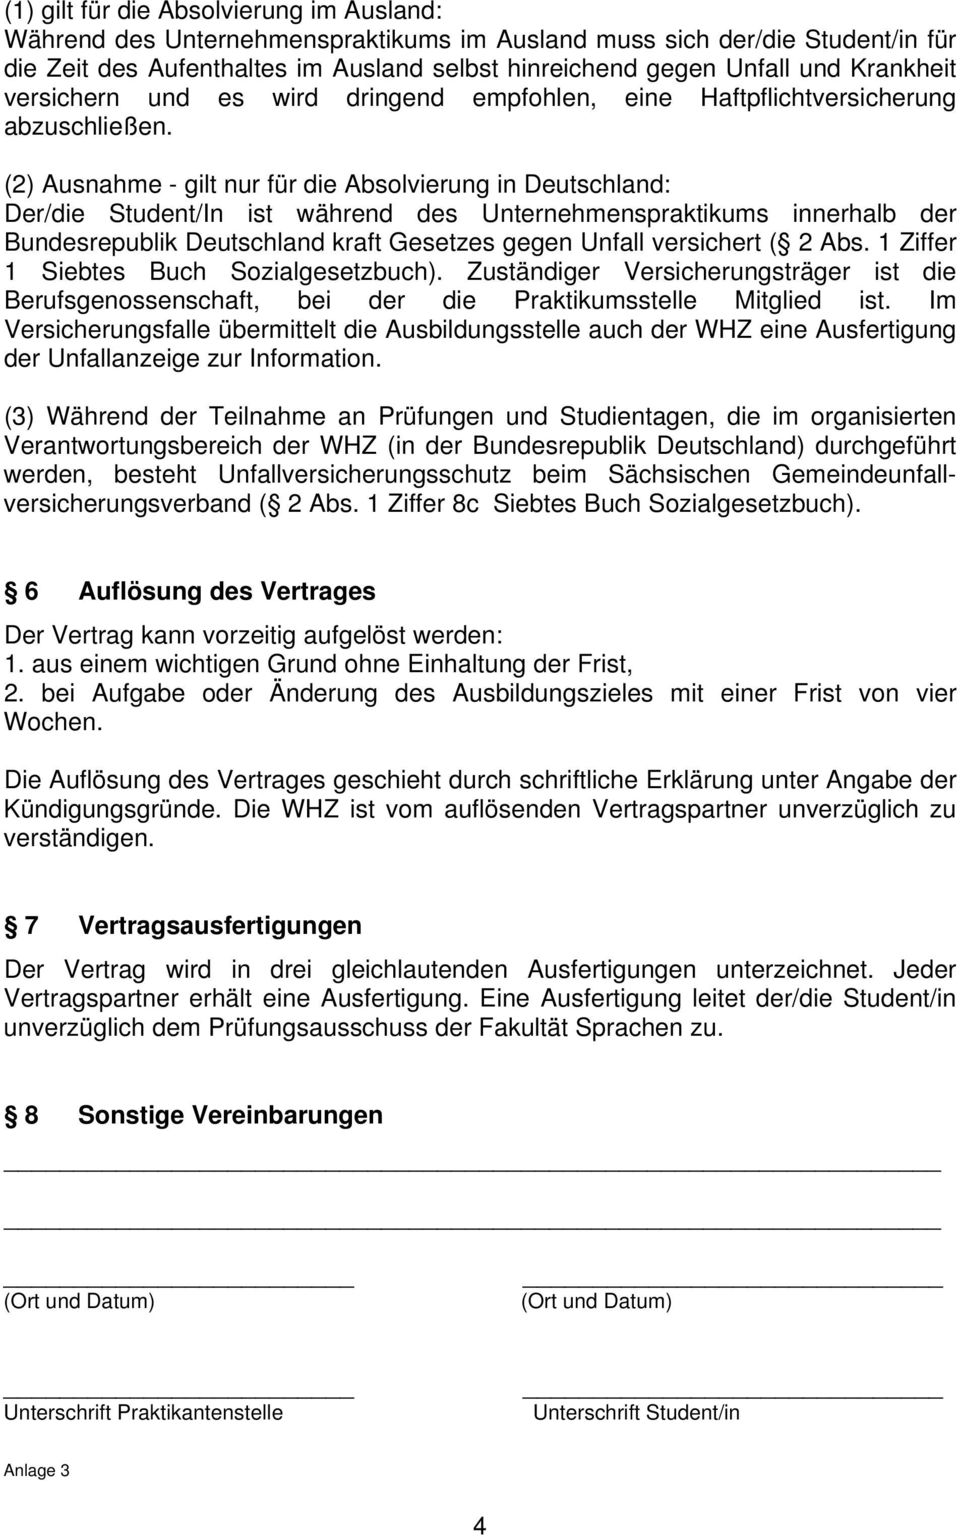 (2) Ausnahme - gilt nur für die Absolvierung in Deutschland: Der/die Student/In ist während des Unternehmenspraktikums innerhalb der Bundesrepublik Deutschland kraft Gesetzes gegen Unfall versichert